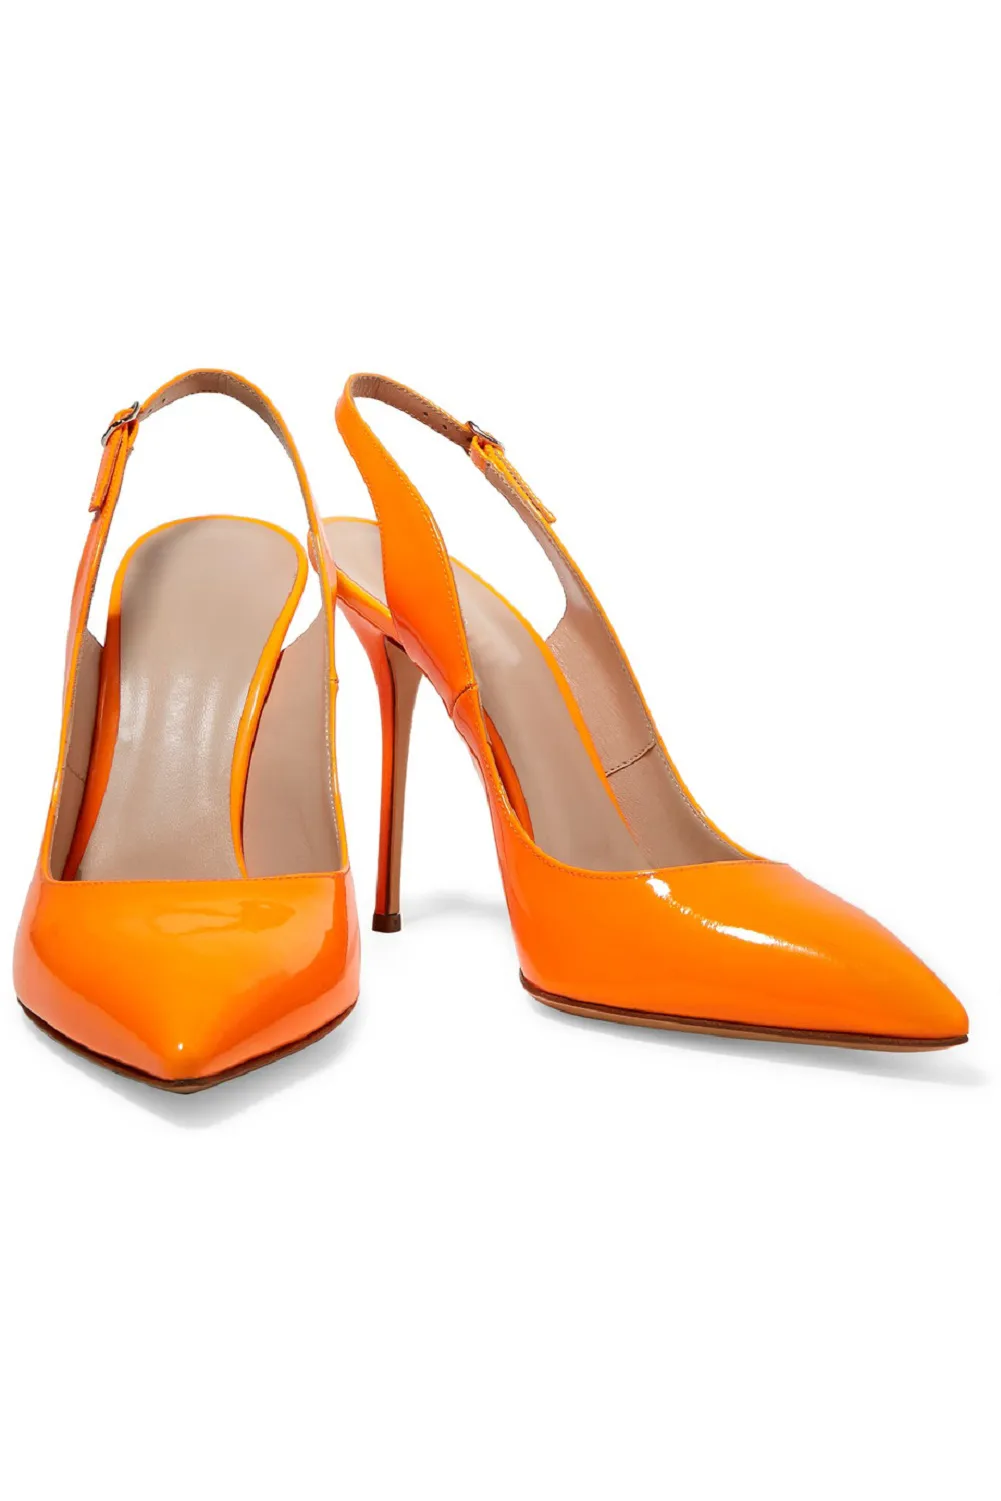 Zandina scarpe da donna fatte a mano in pelle verniciata di nuovo arrivo con cinturino alla caviglia a punta tacco alto pompe da ballo feste di moda arancione